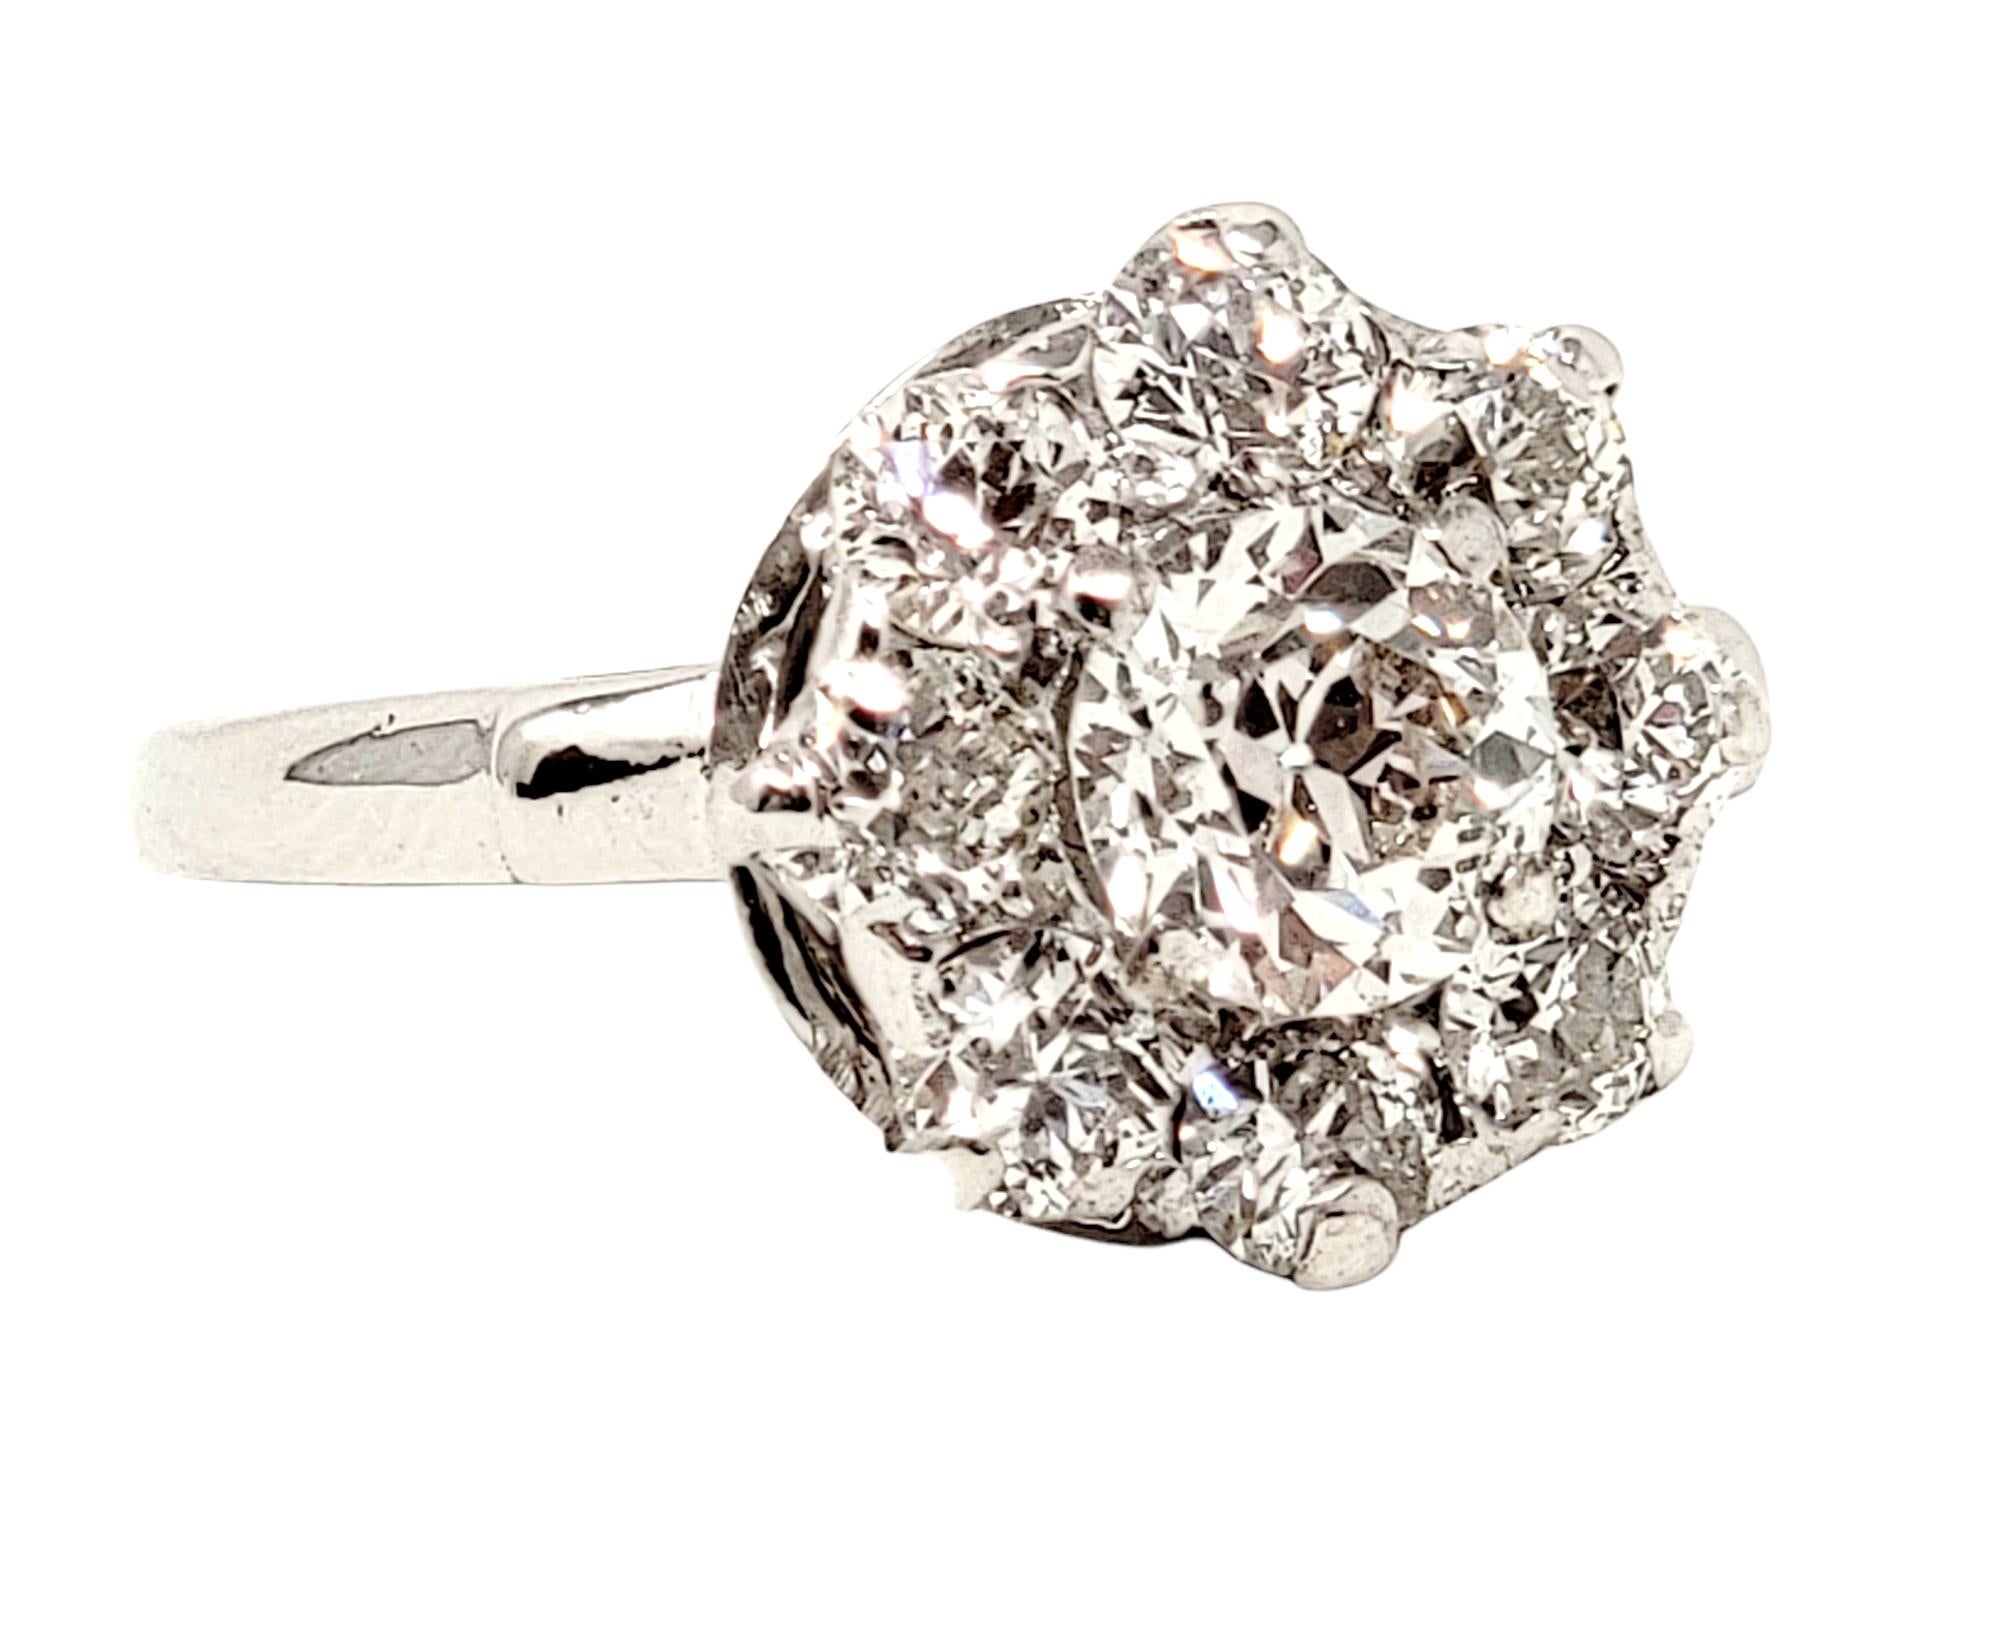 Ringgröße: 6

Atemberaubend schöner Verlobungsring mit Diamanten im alten europäischen Schliff. Dieses brillante Stück lässt den Finger glänzen und bleibt dennoch zart. Der runde Mittelstein ist in der Mitte des Schmuckstücks gefasst und sitzt etwas